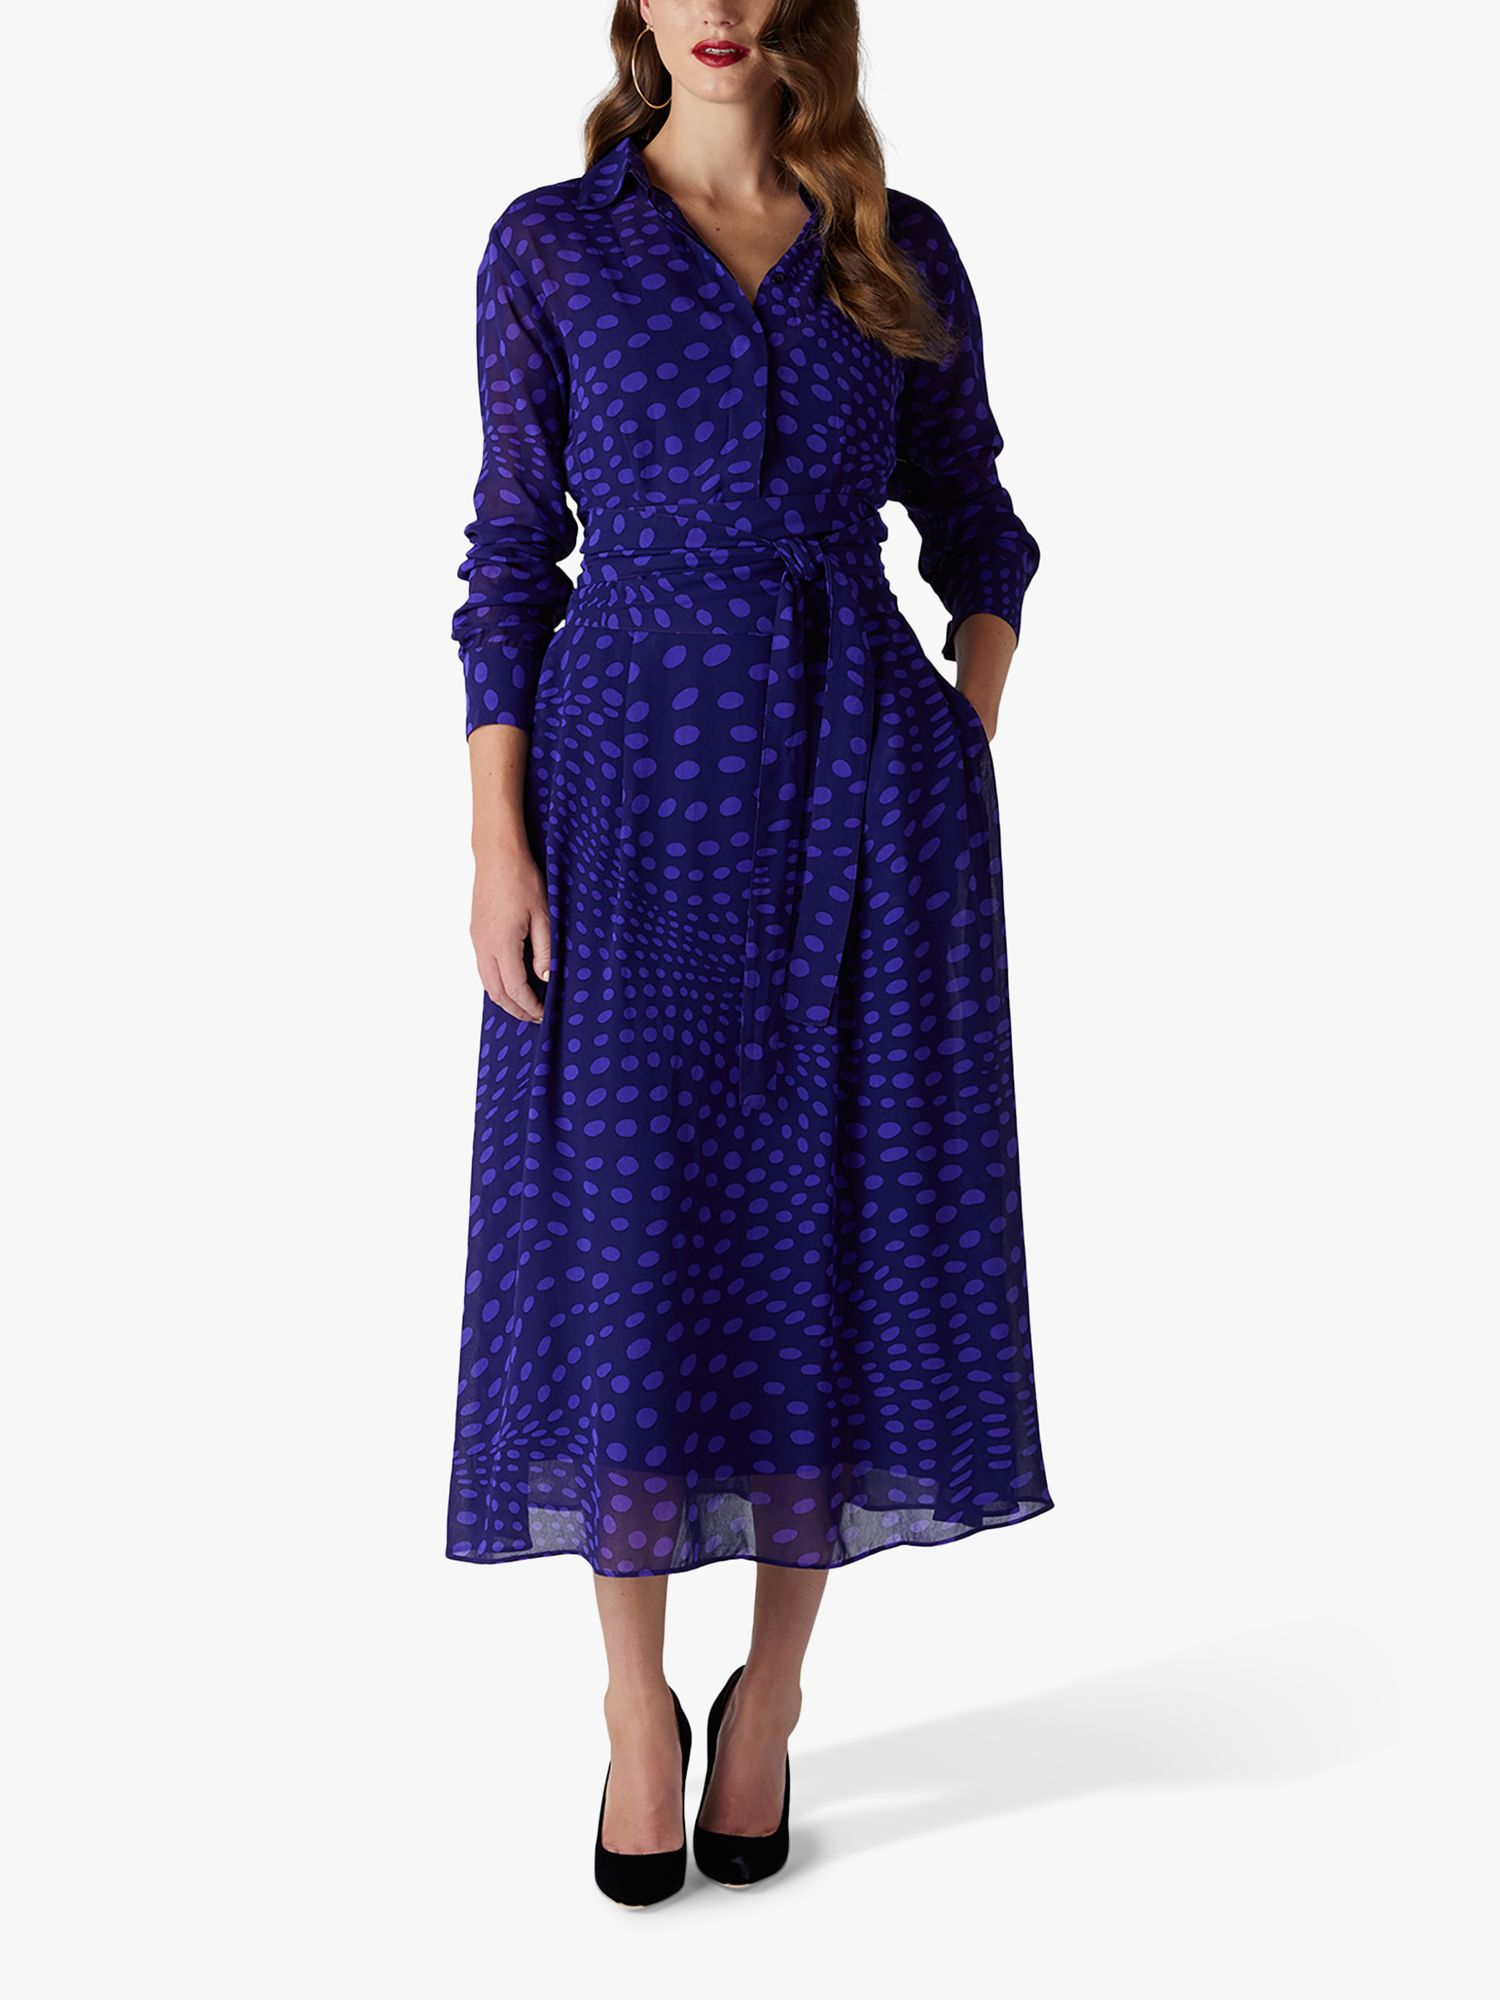 Jasper Conran London Eden Spot Print Midi Shirt Dress, Purple, 8